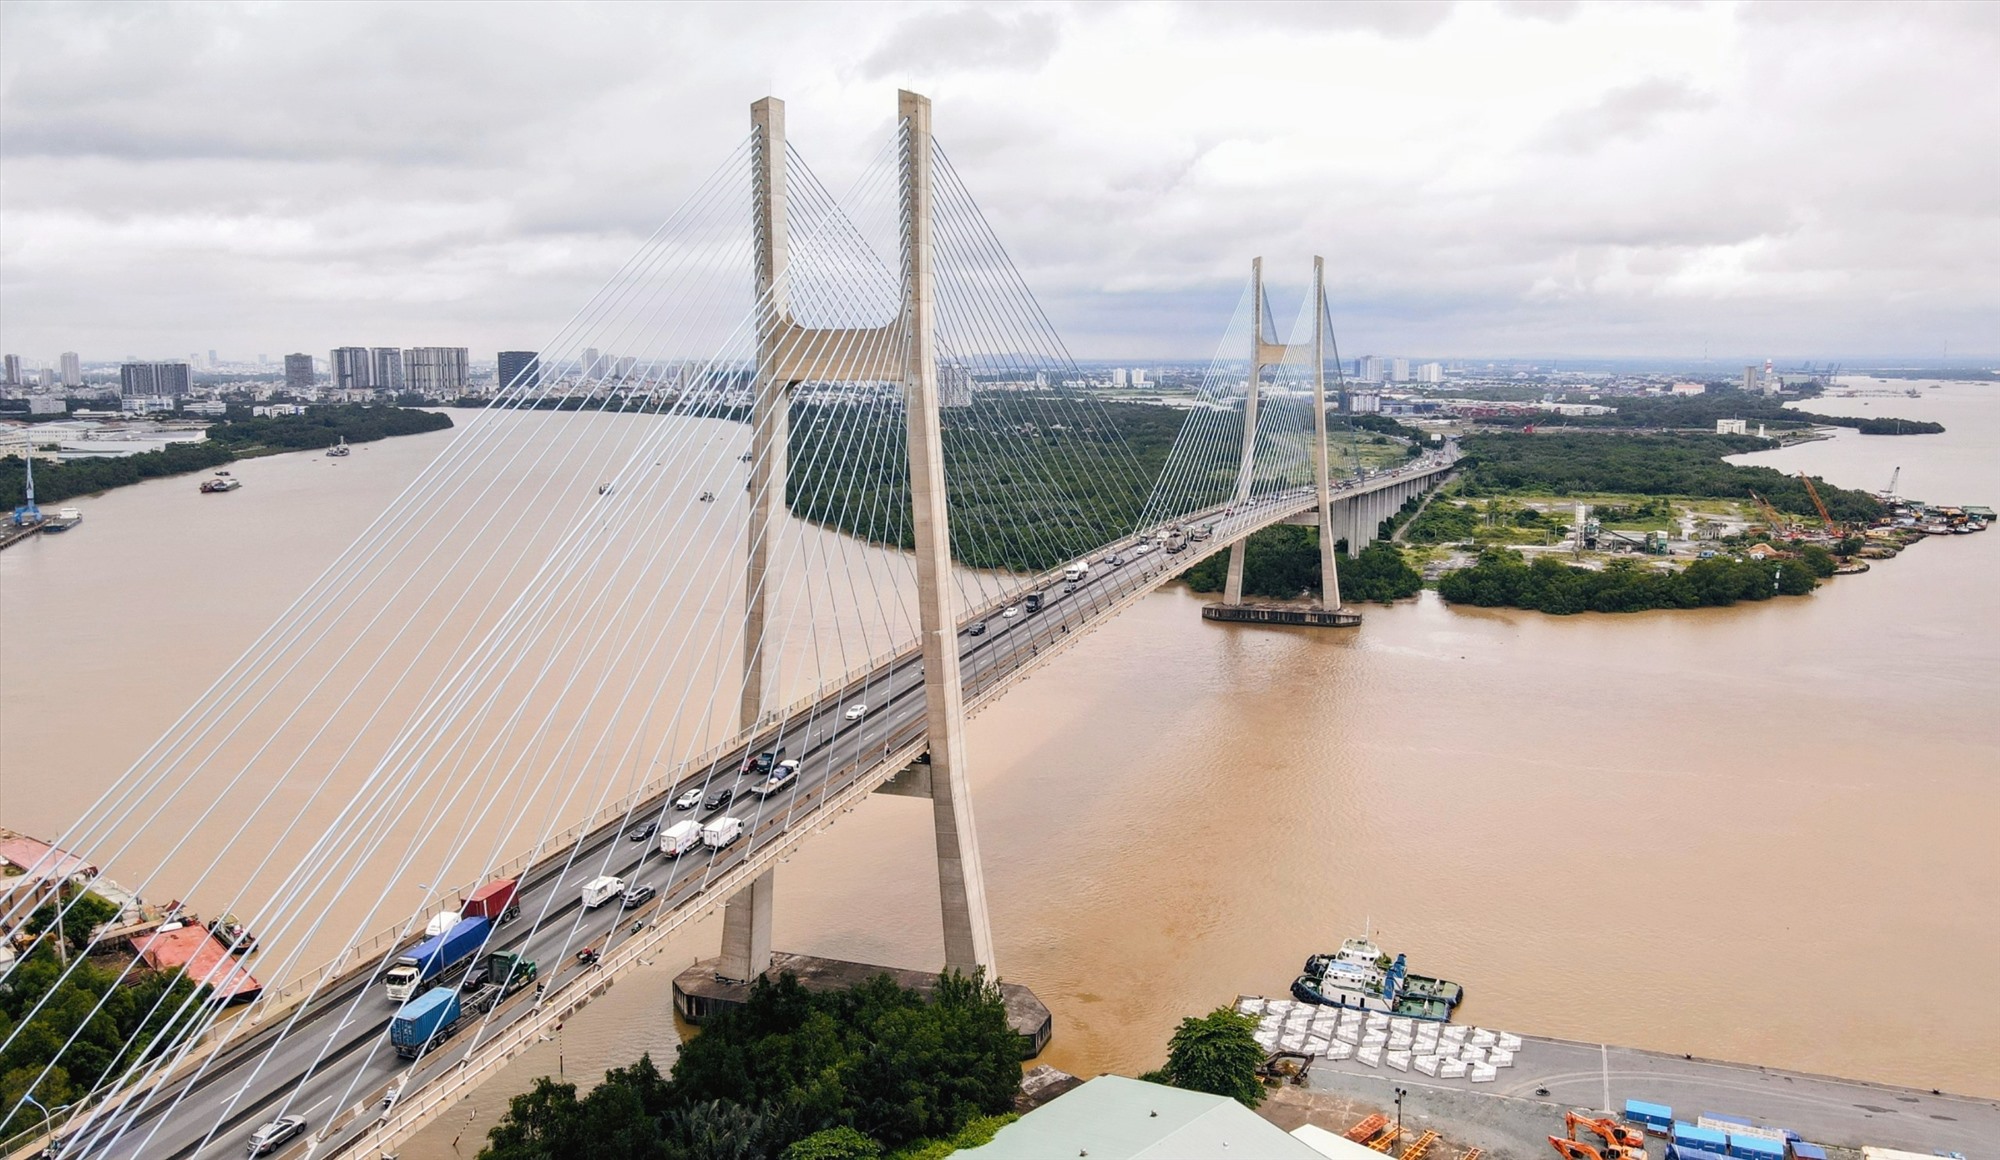 Cầu Phú Mỹ nằm trên tuyến đường vành đai 2 TPHCM, đây là cây cầu dây văng lớn nhất TPHCM có 6 làn xe, kết nối Khu đô thị mới Thủ Thiêm (TP Thủ Đức) và Khu đô thị Phú Mỹ Hưng (Quận 7).